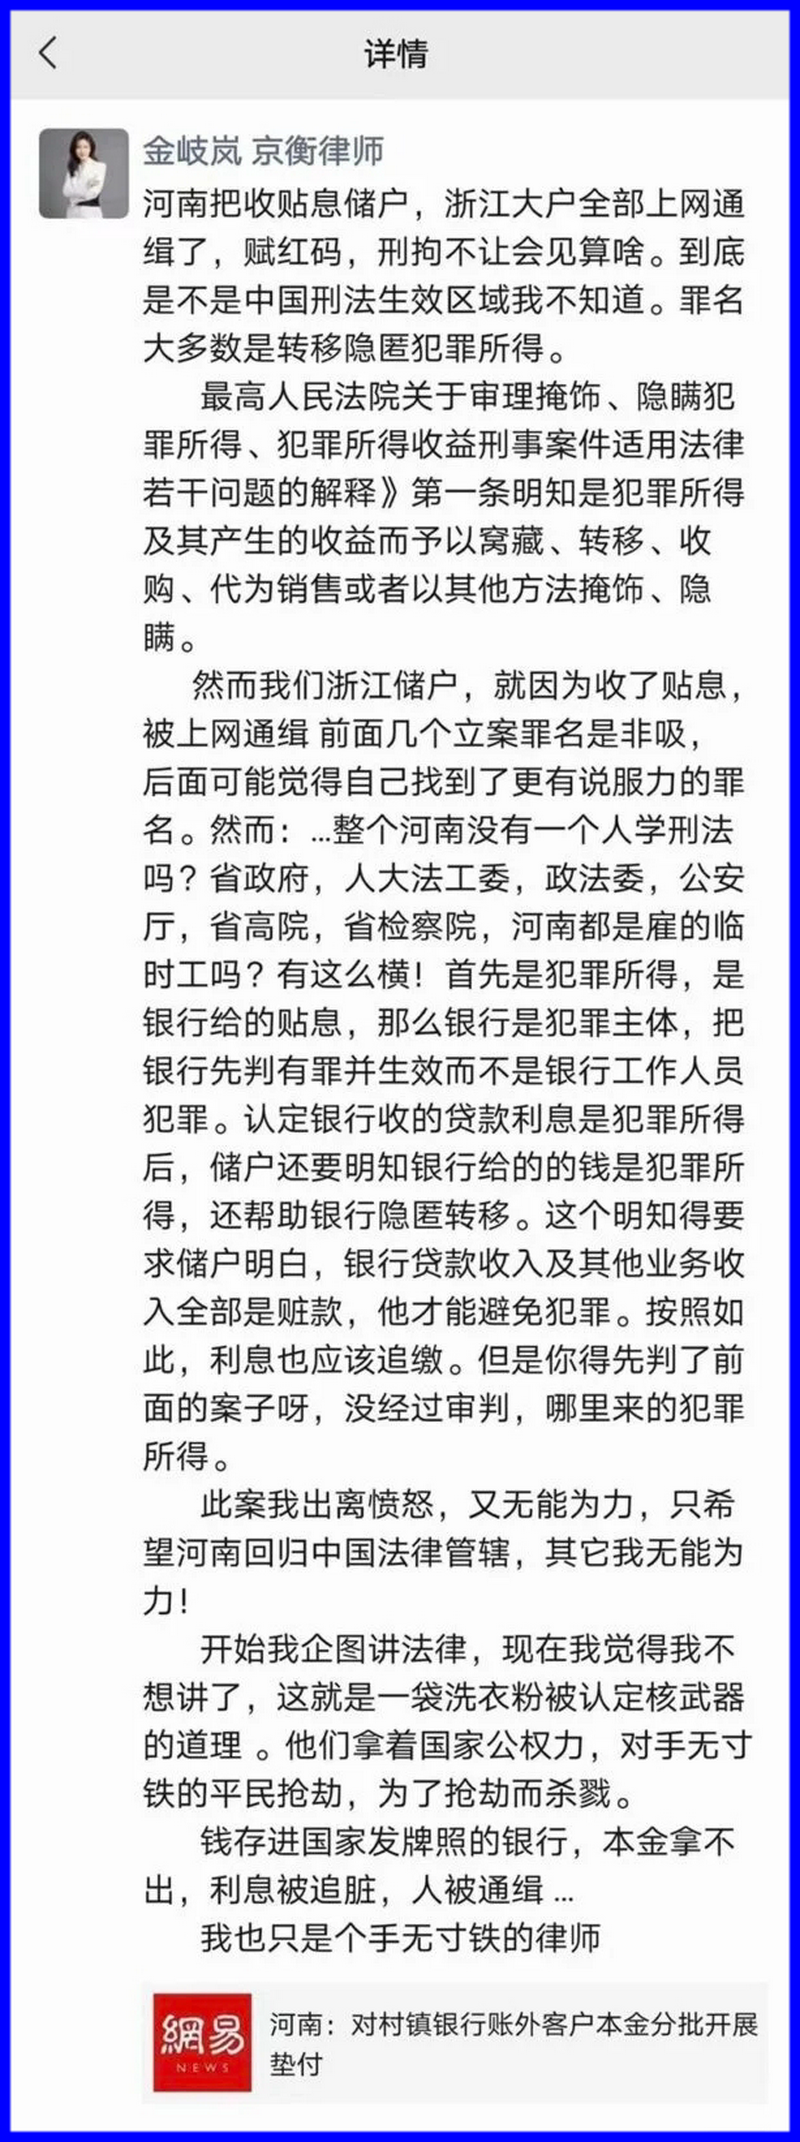 浙江京衡律师事务所的律师金岐岚发文批评官方“为抢劫杀戮”。.png